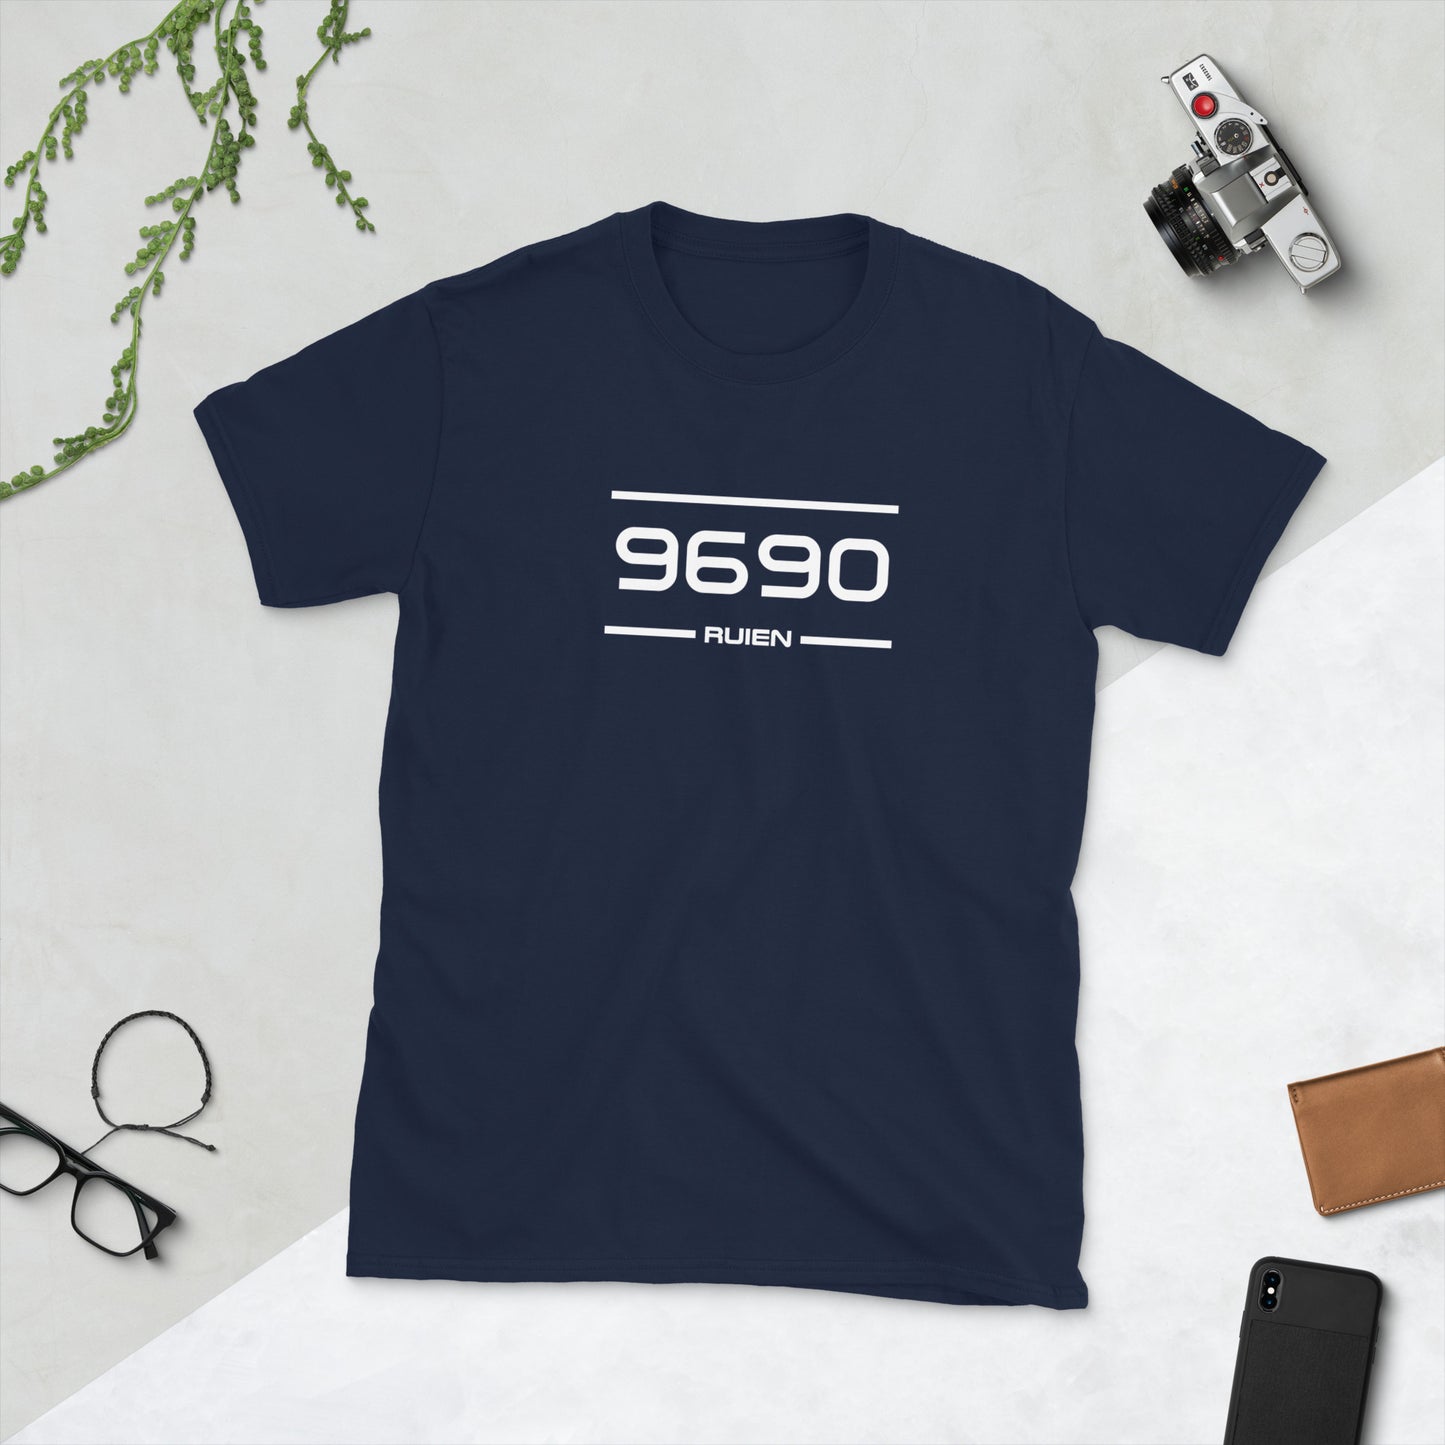 T-Shirt - 9690 - Ruien